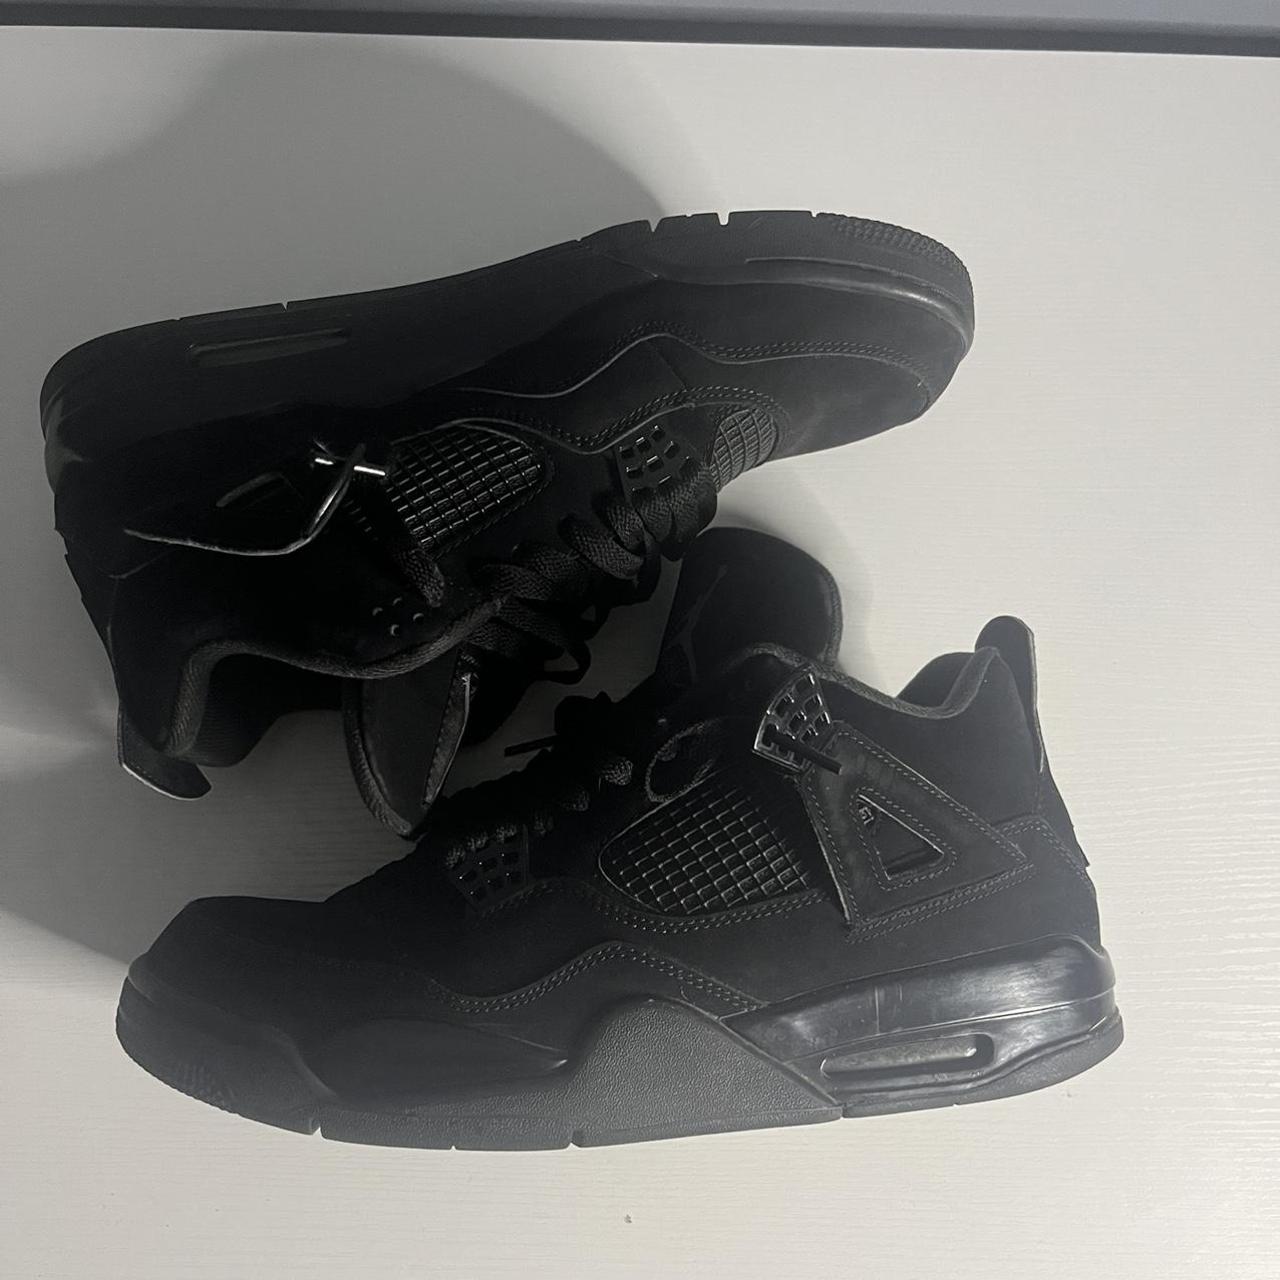 Air Jordan 4 “Black Cat” Size 11 OG Box Deadstock - Depop